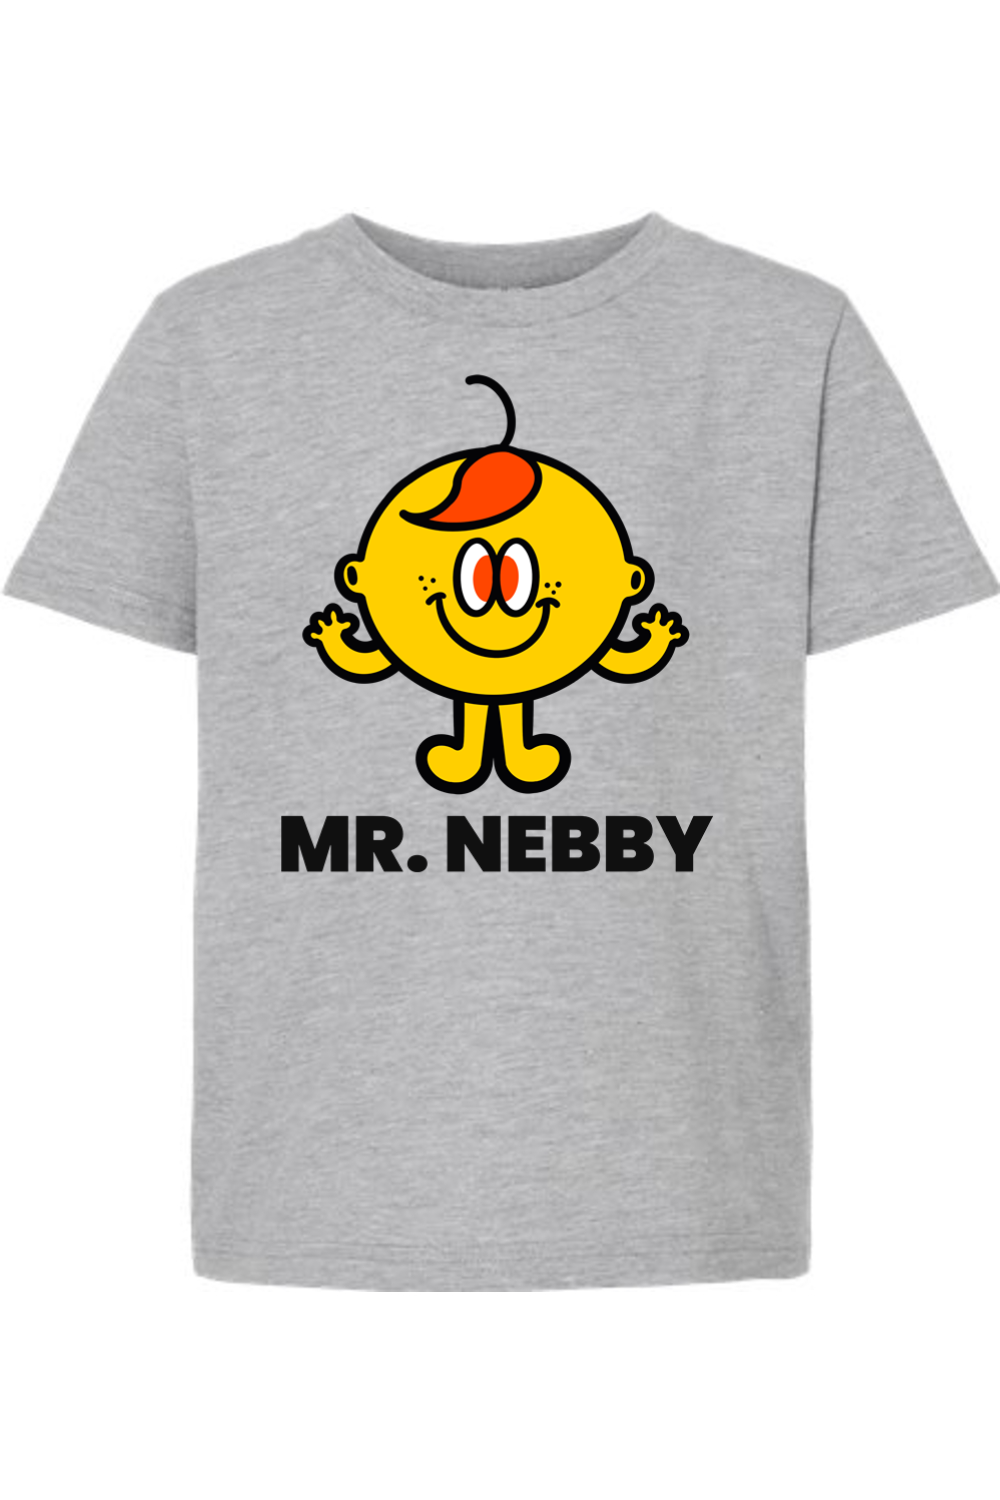 Mr. Nebby - Kids Tee - Yinzylvania